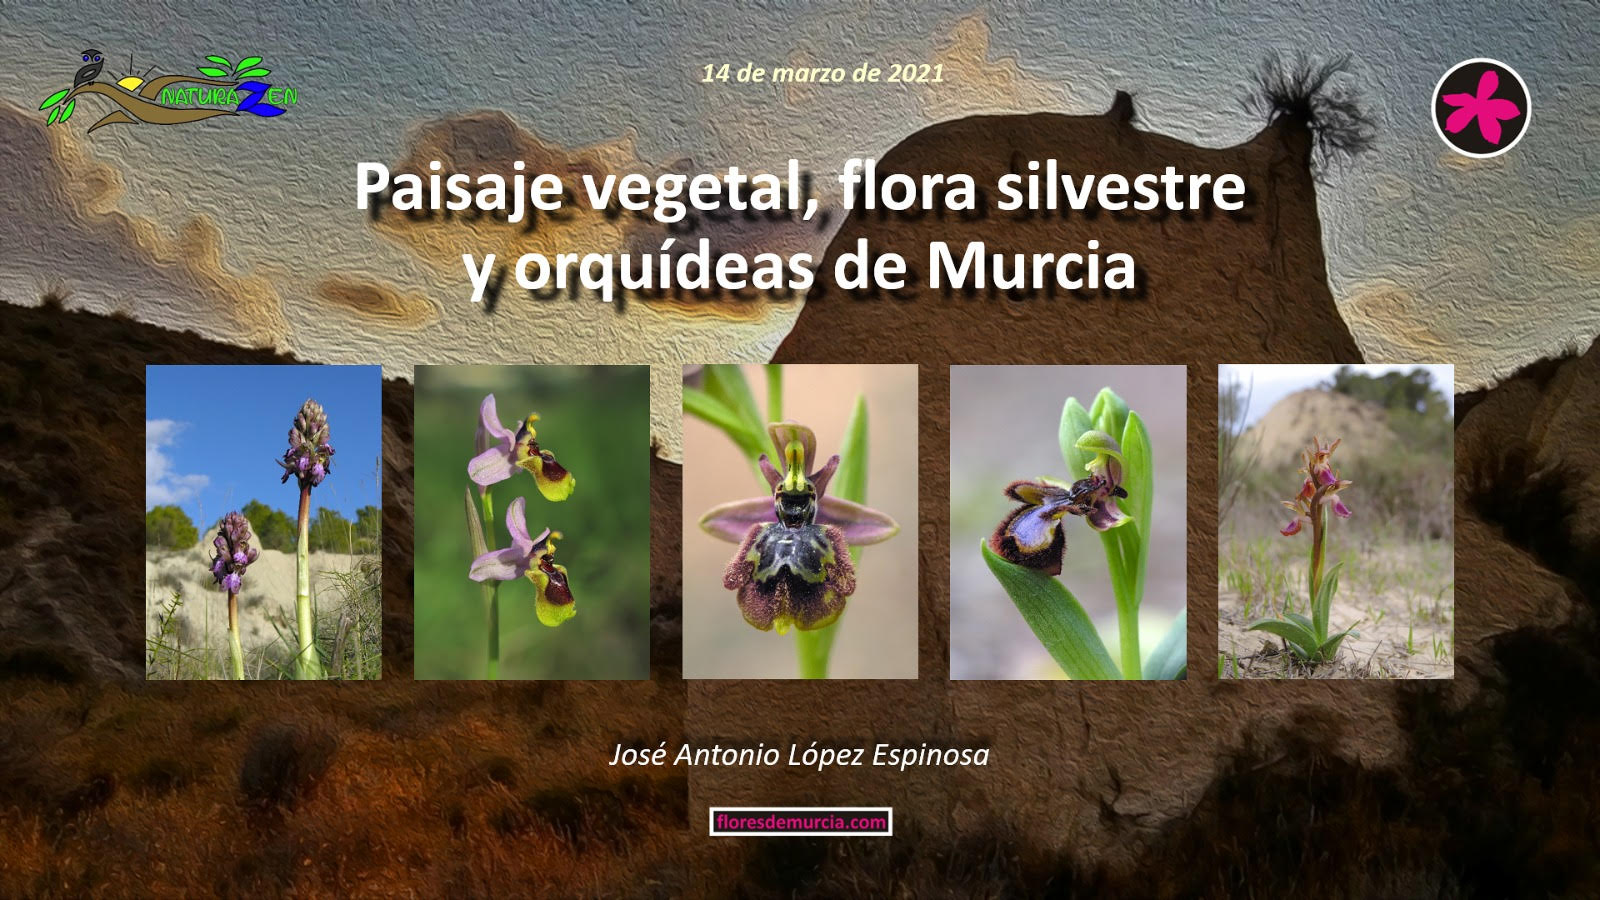 Paisaje vegetal, flora silvestre y orquídeas de Murcia, con 